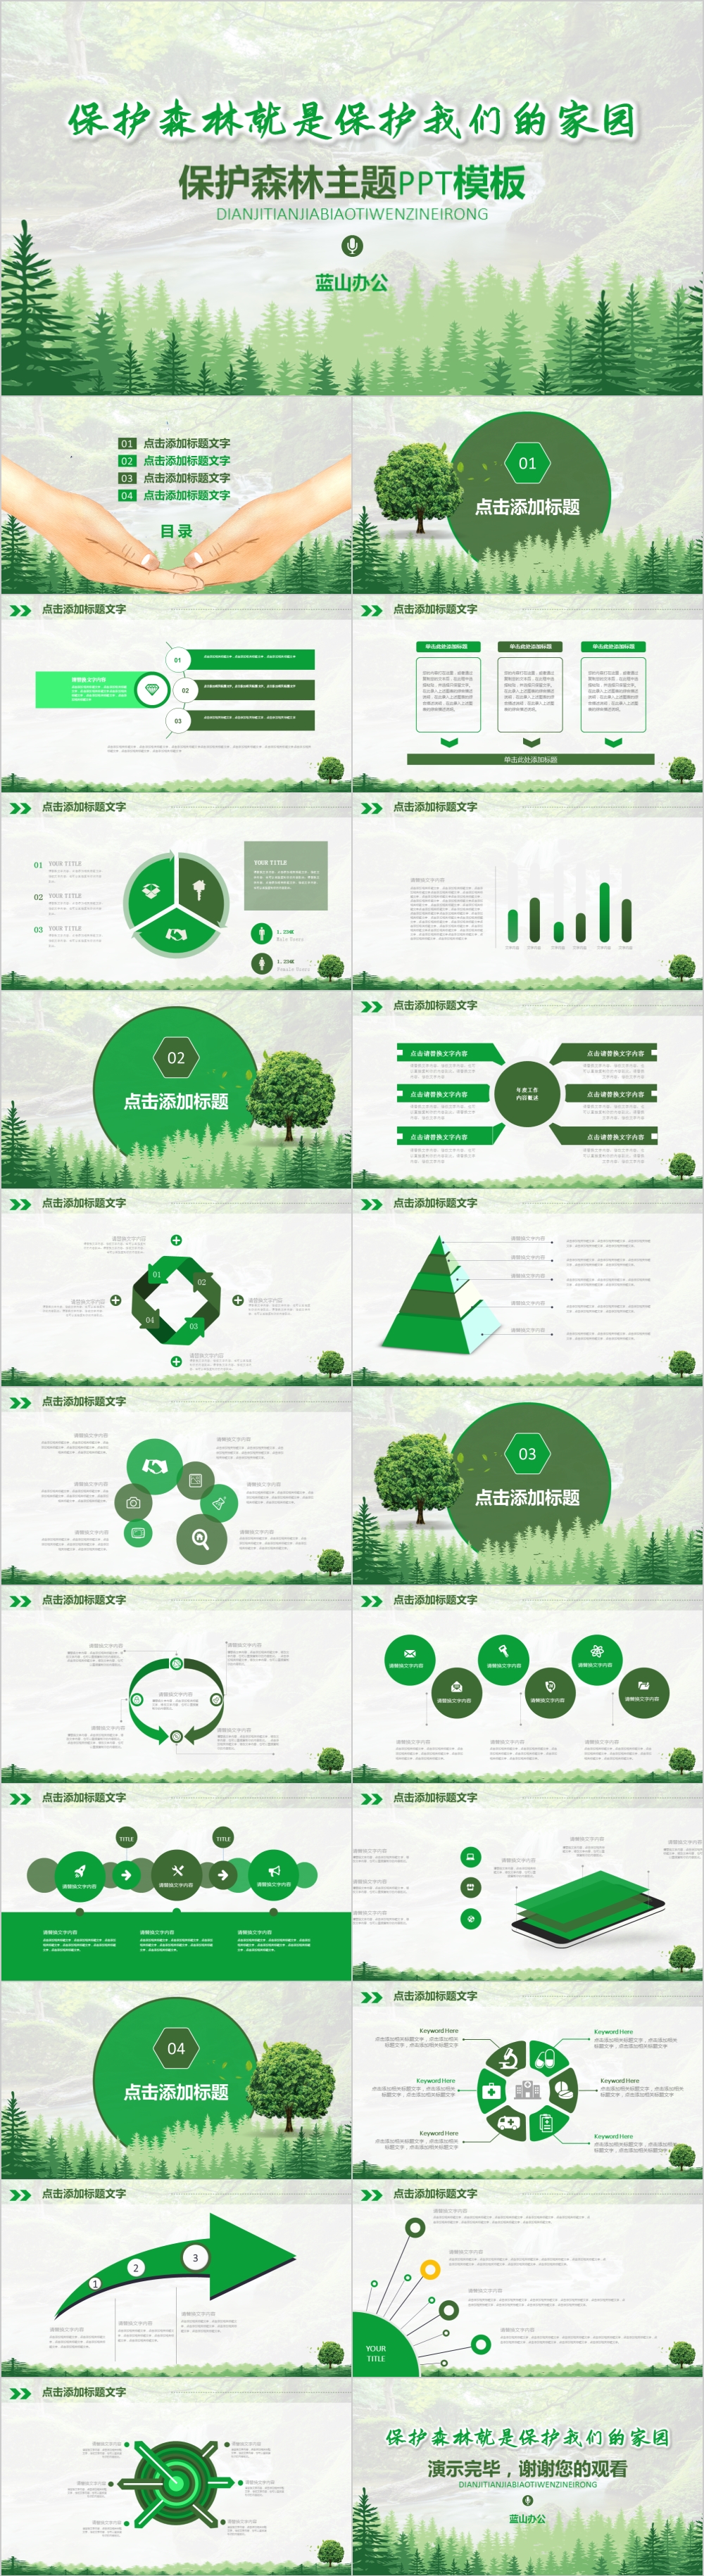 简约森林保护森林主题PPT模板